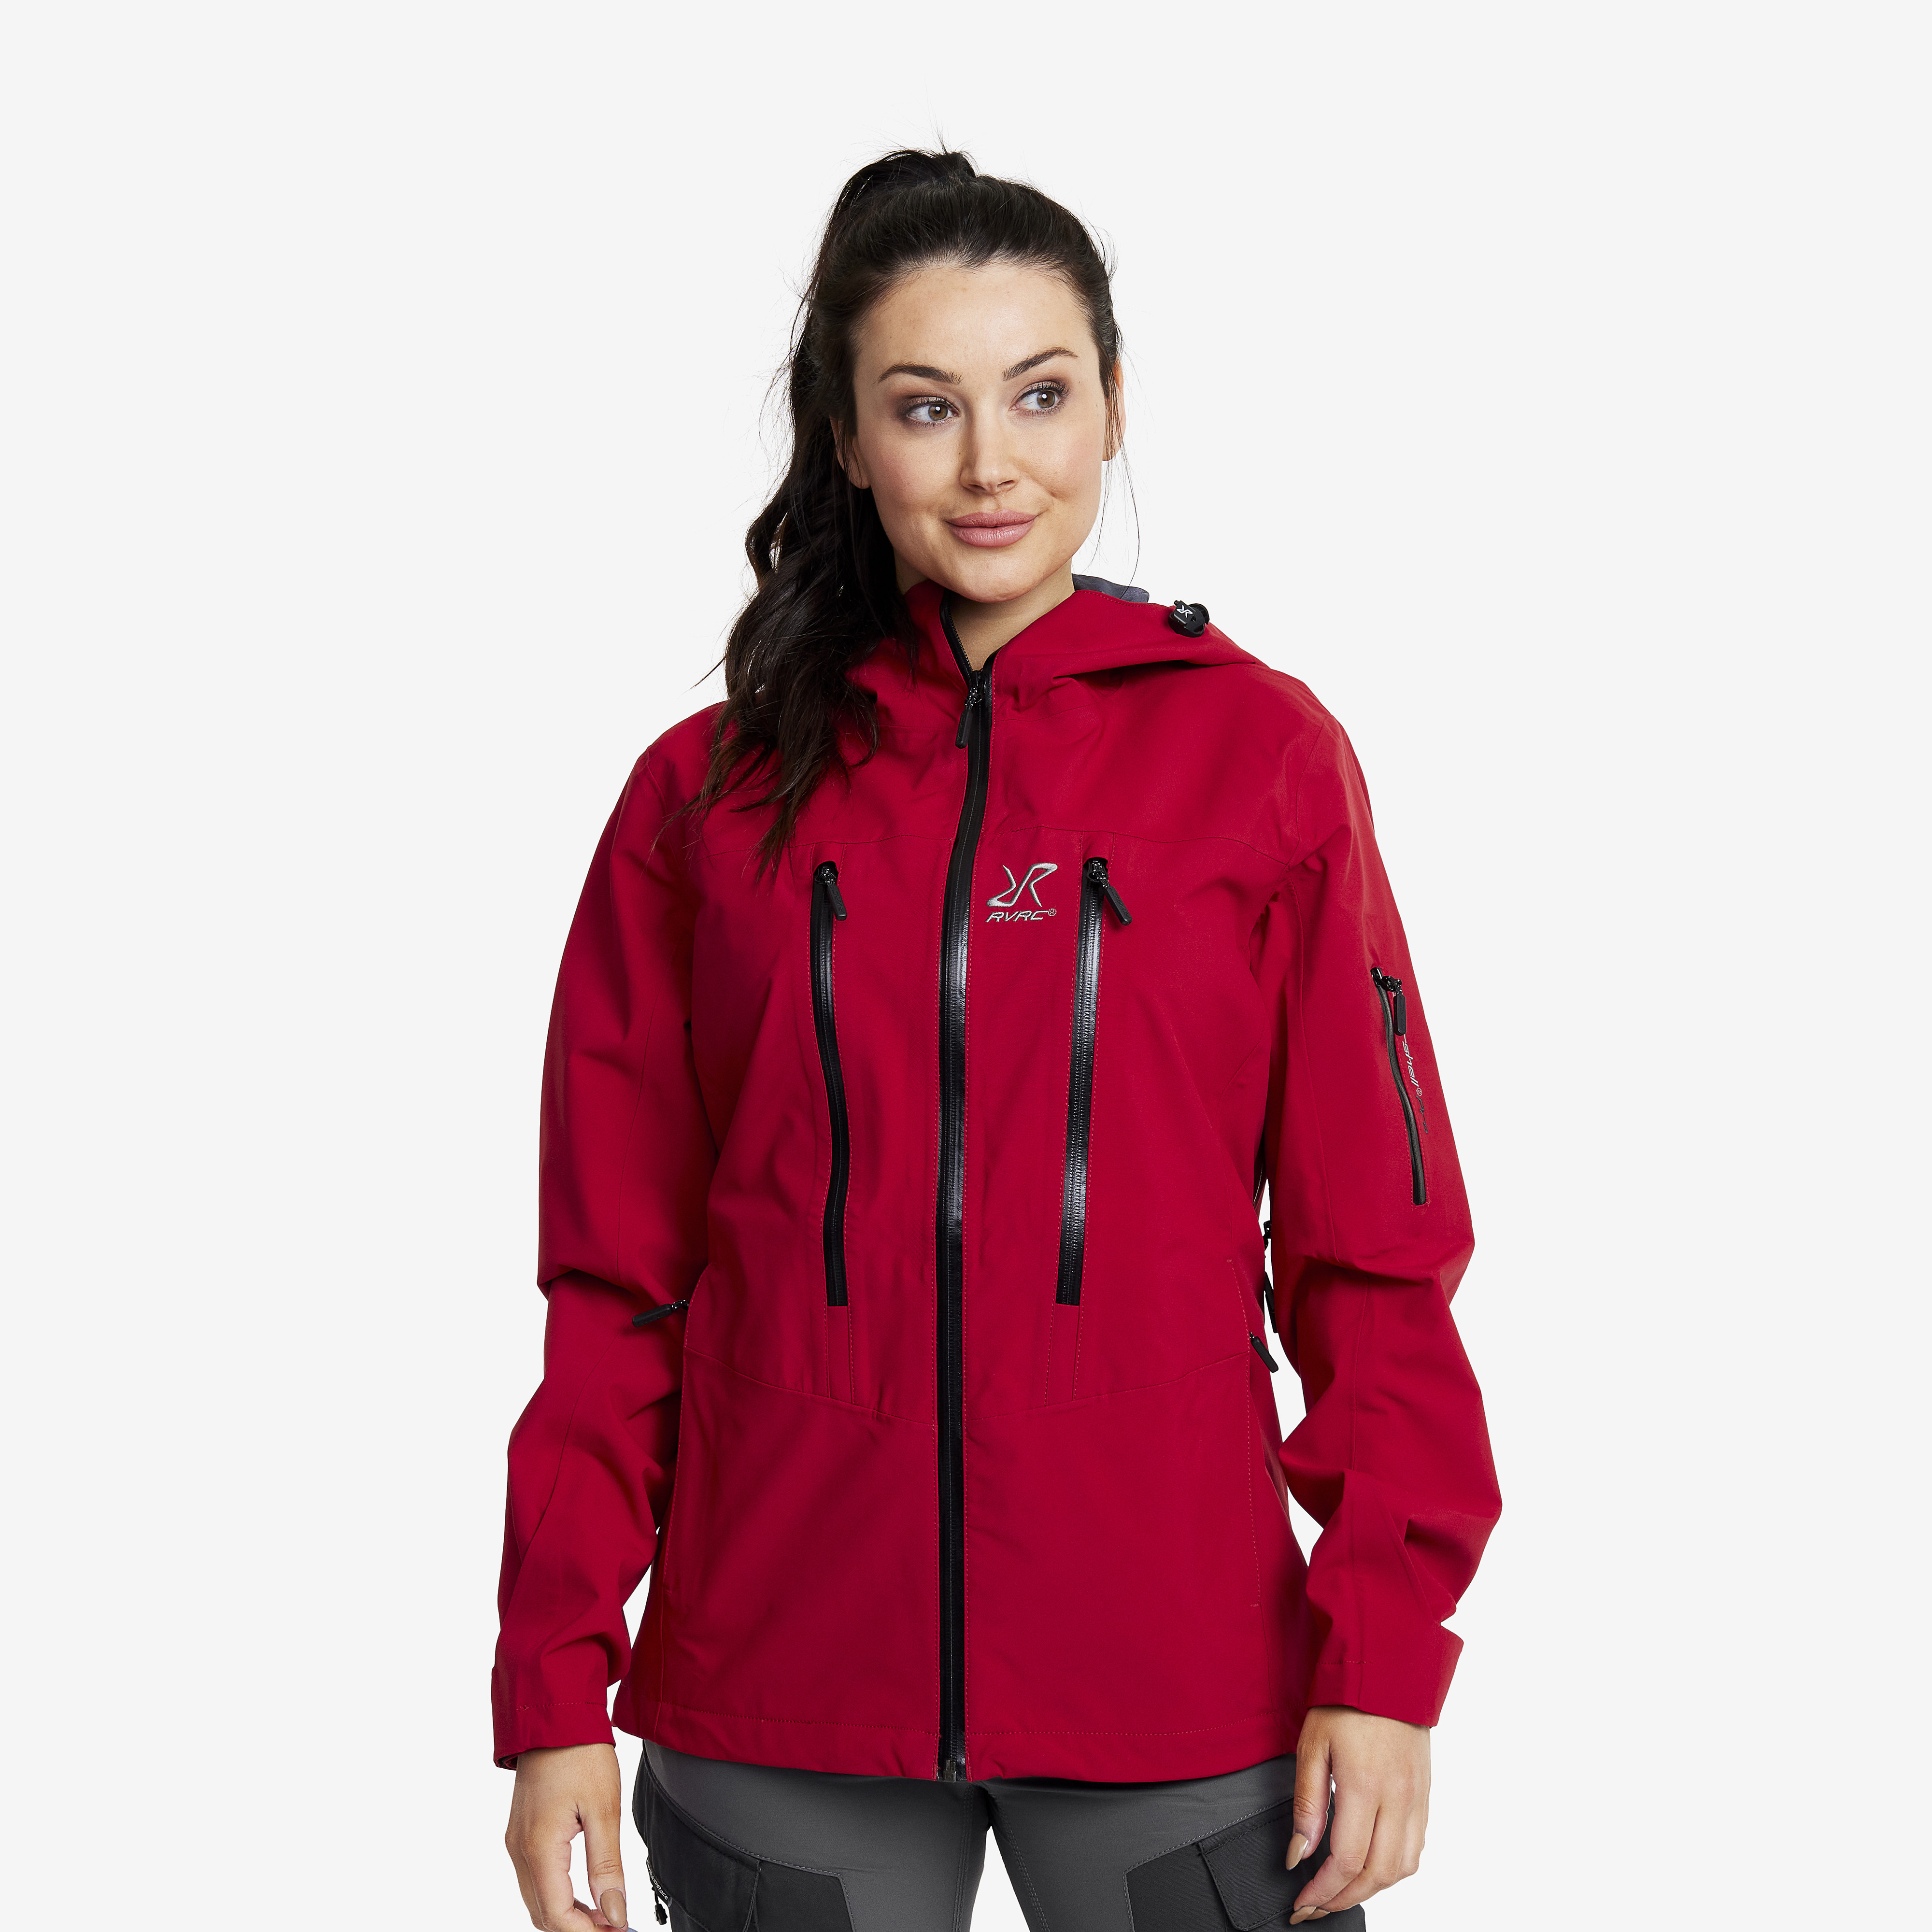 Whisper waterproof jacket for women in red